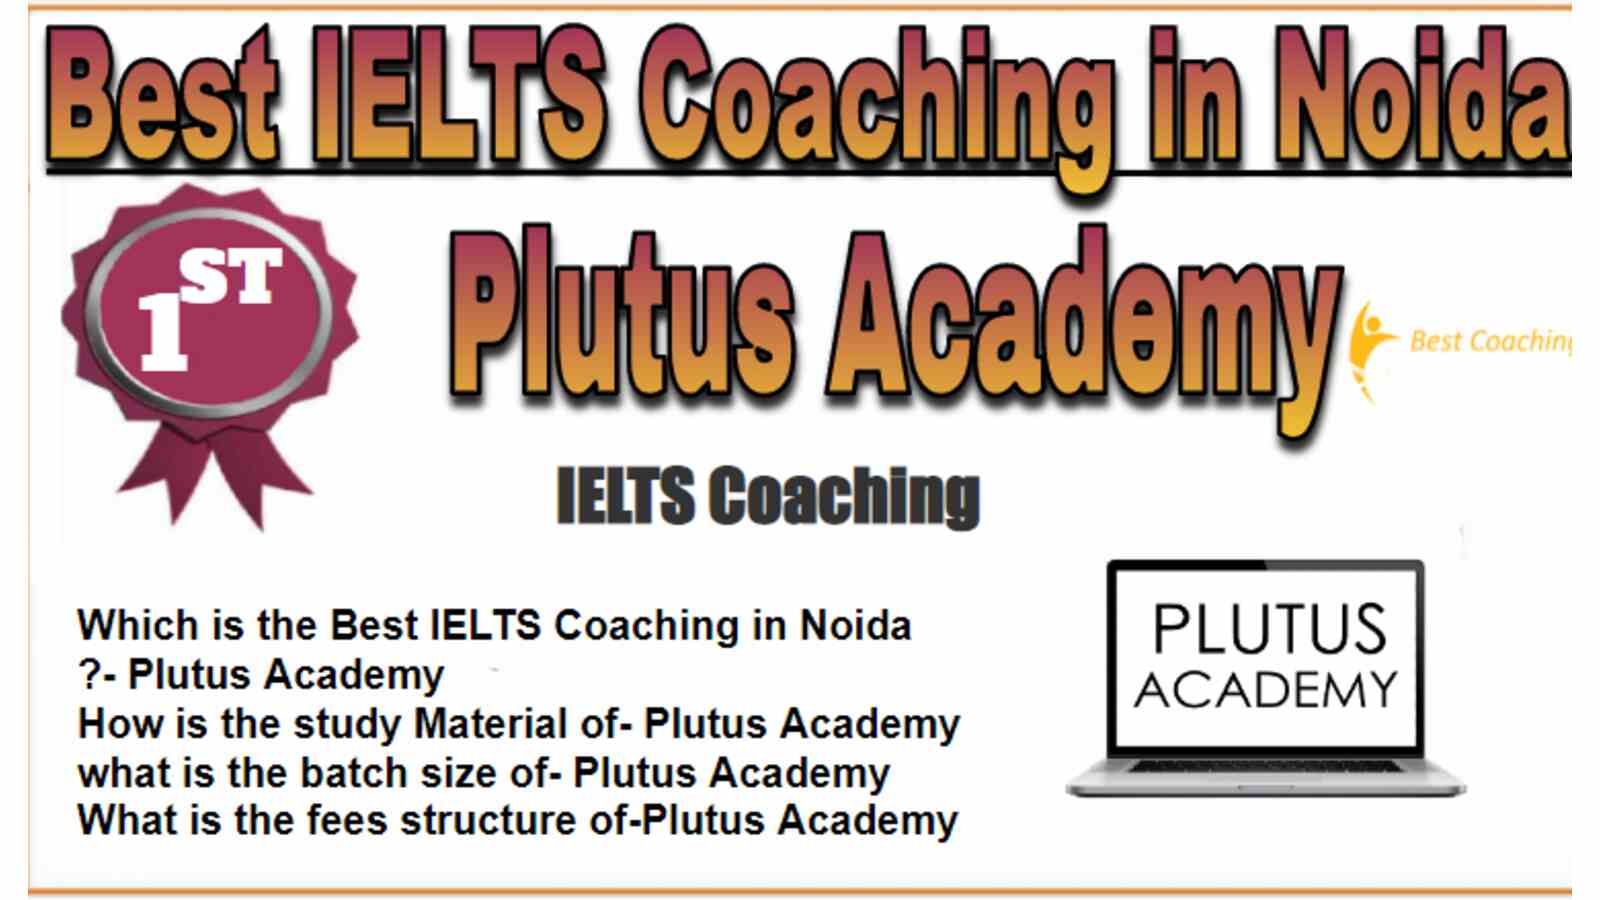 Rank 1 Best IELTS Coaching in Noida